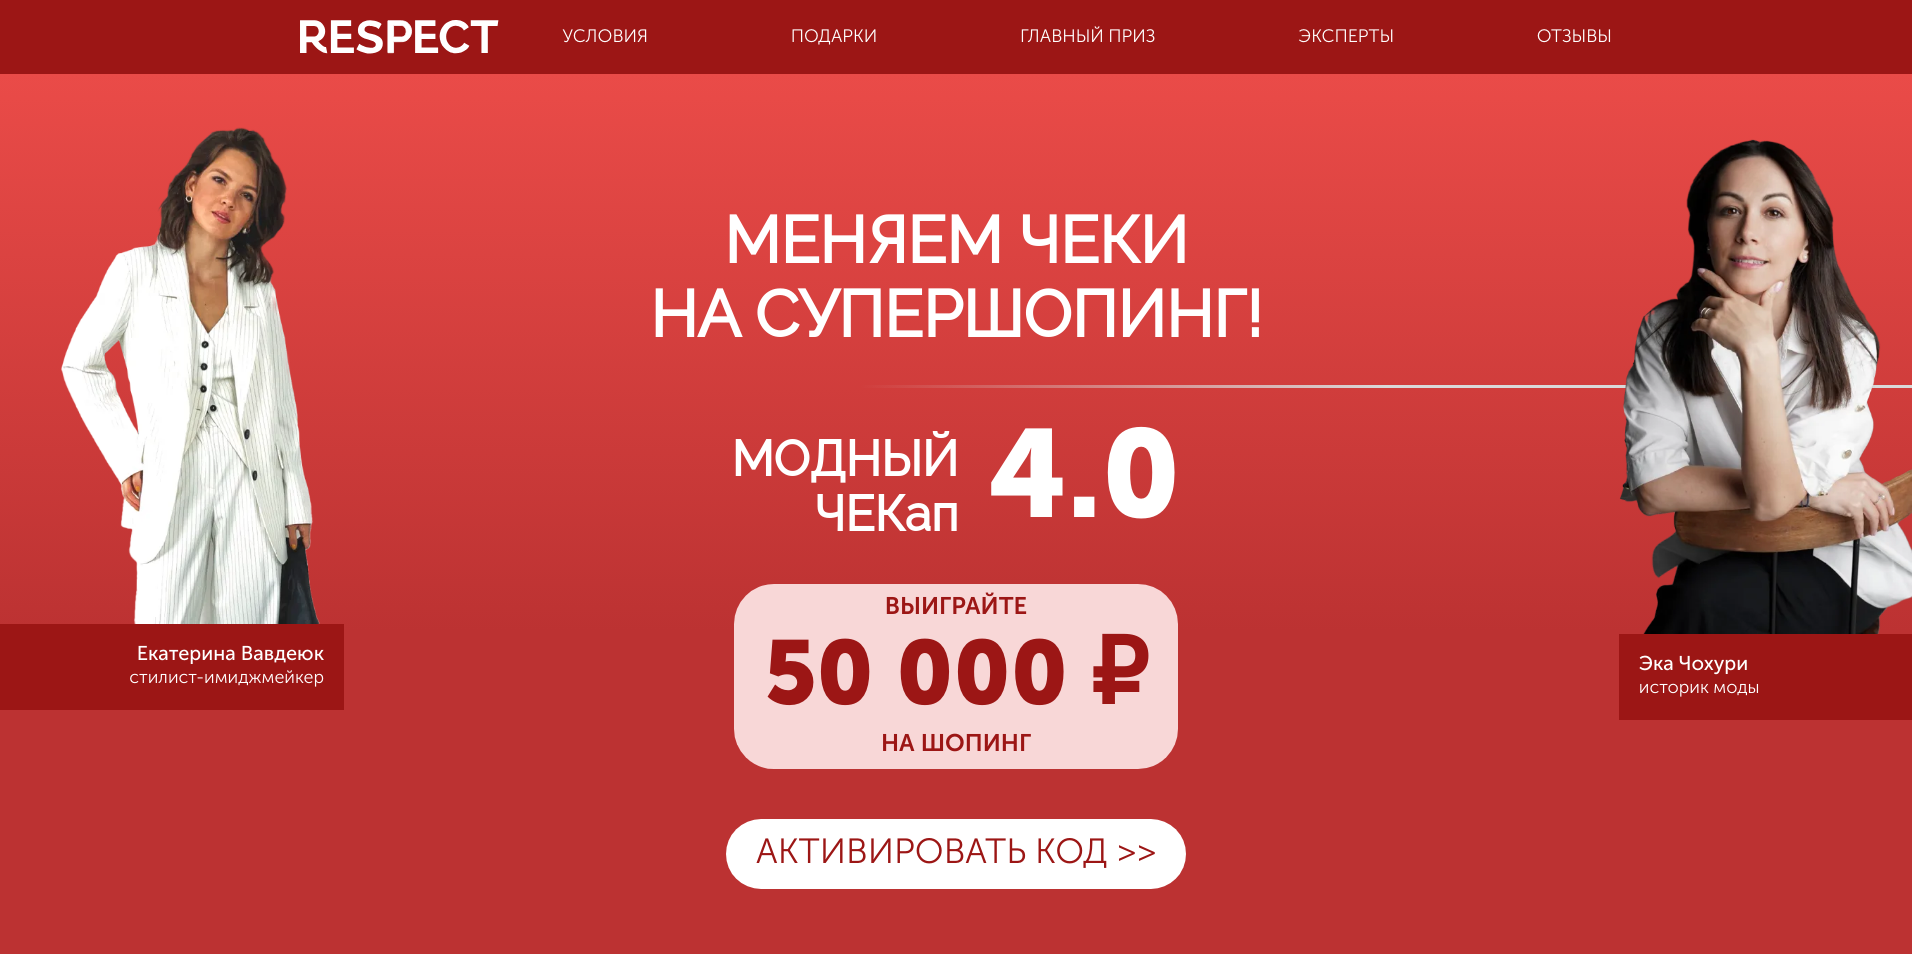 Миниатюра акции «МОДНЫЙ ЧЕКап 4.0»